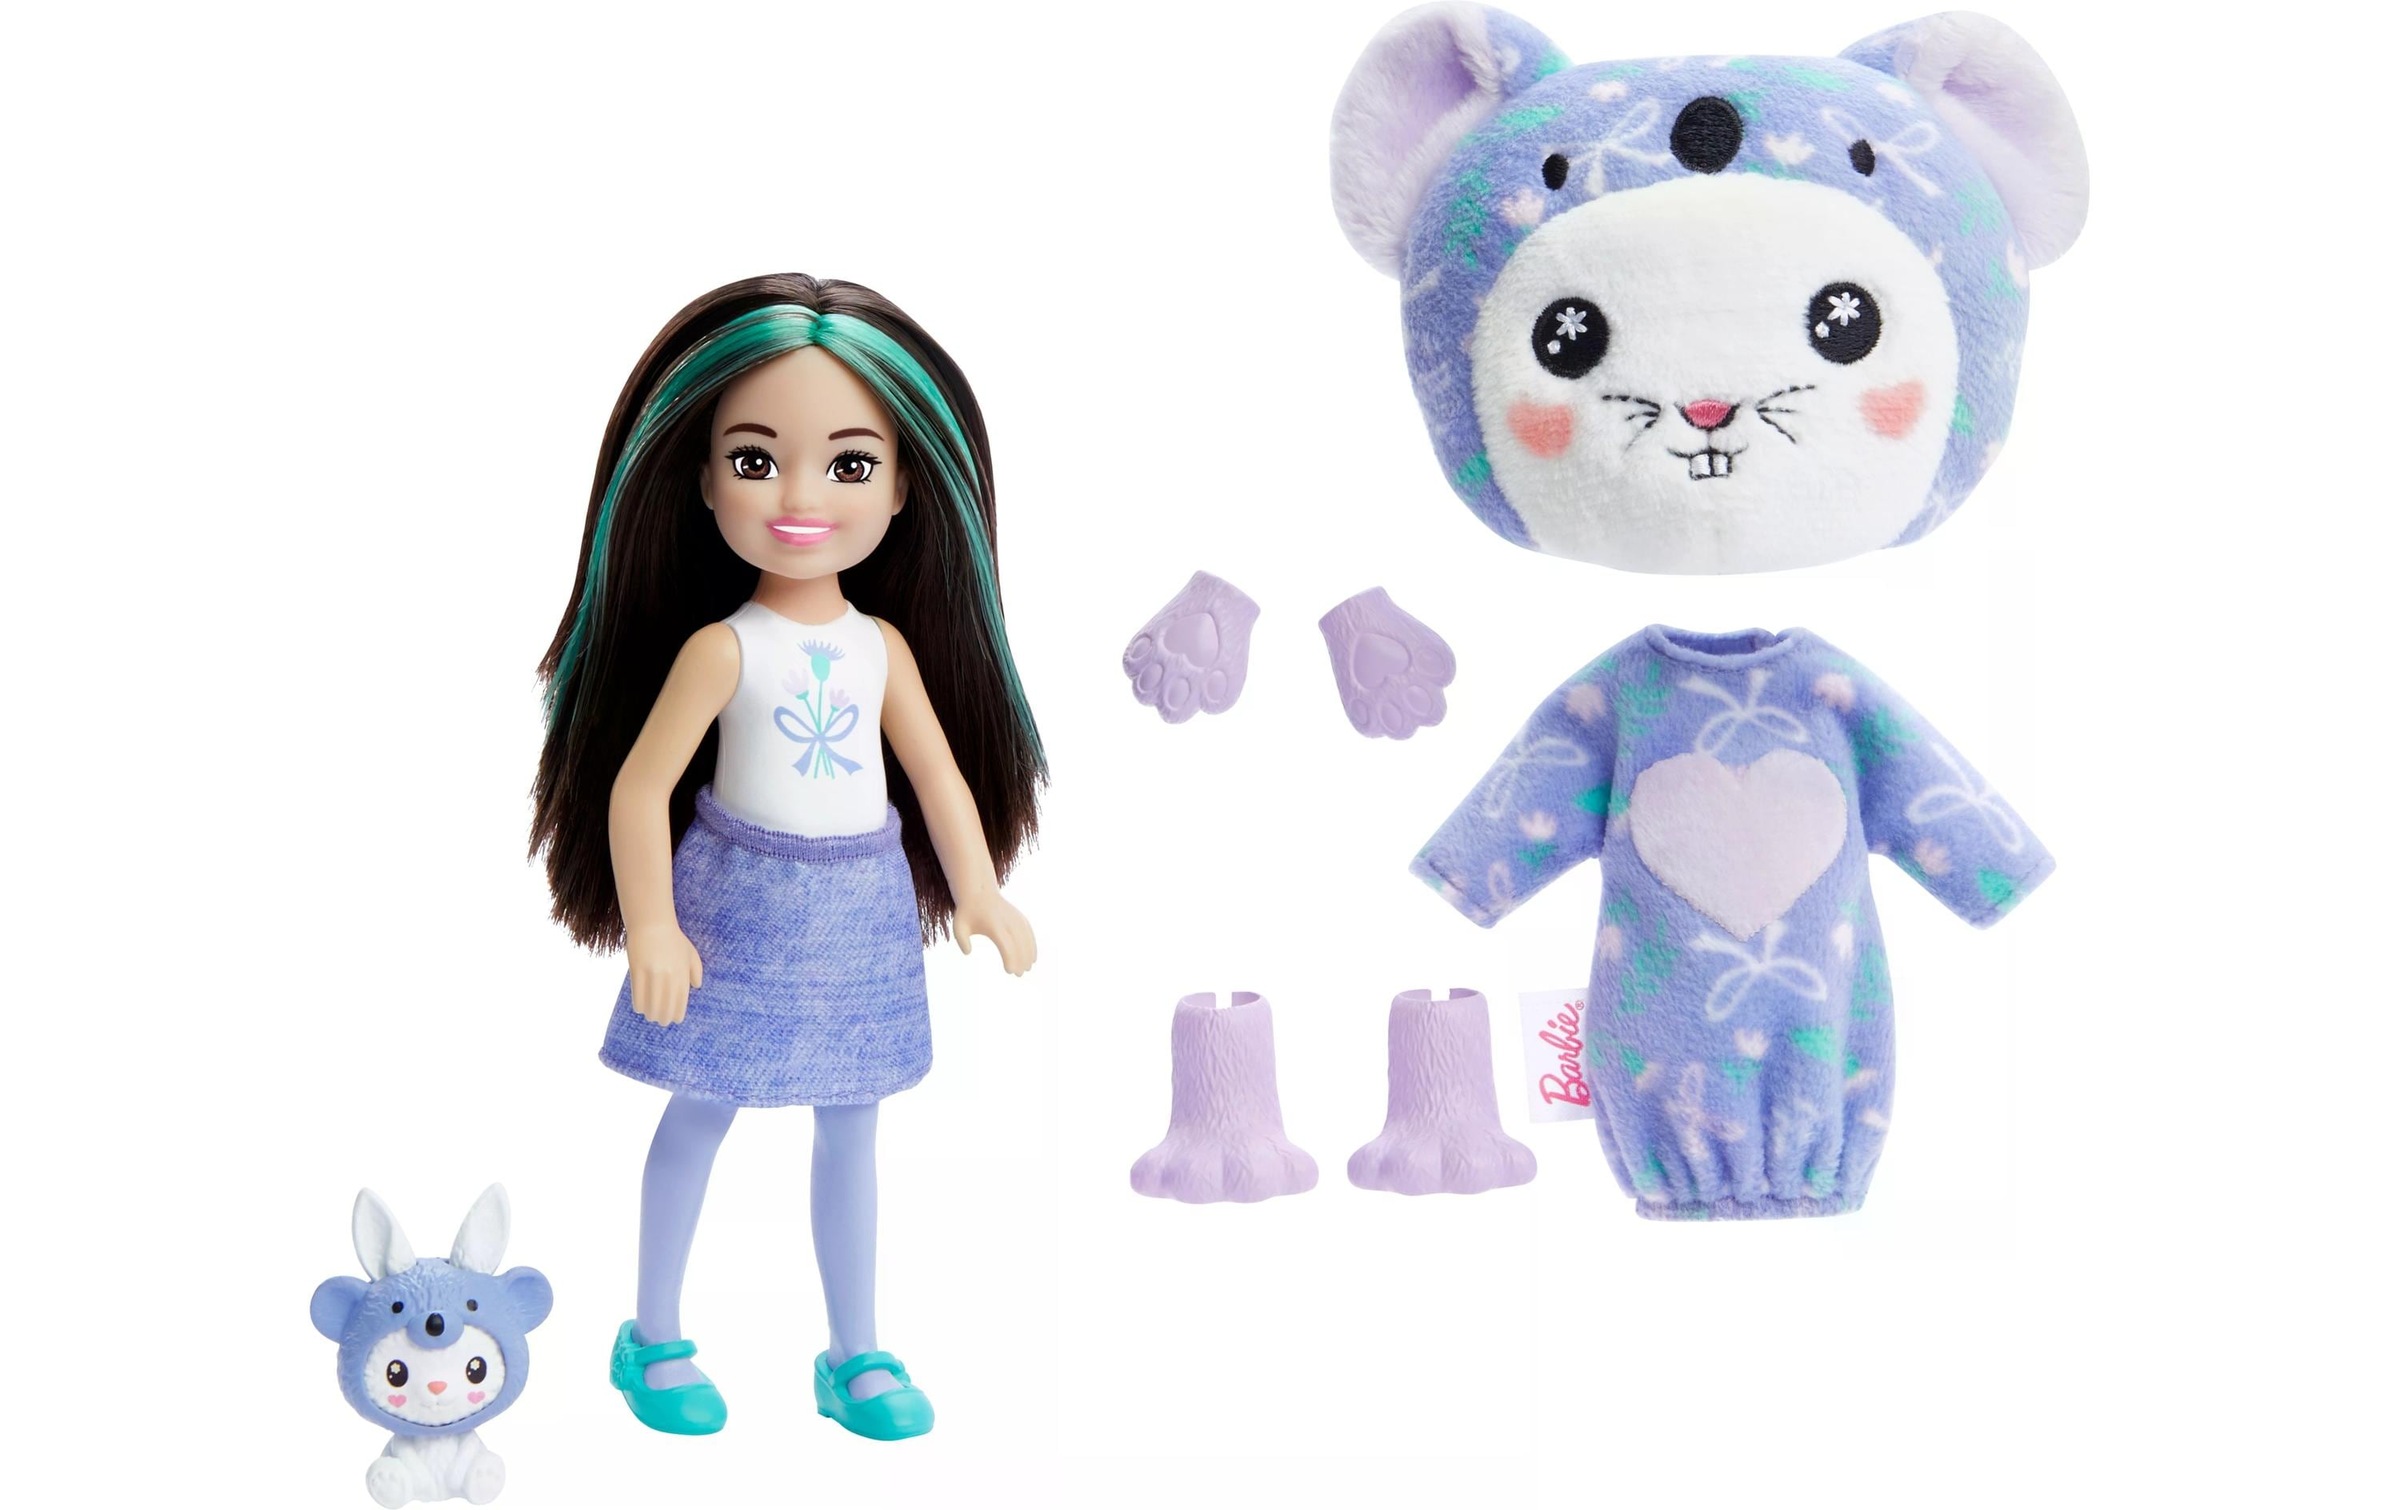 Barbie Anziehpuppe »Barbie Cutie Reveal Chelsea – Bunny in Koala«